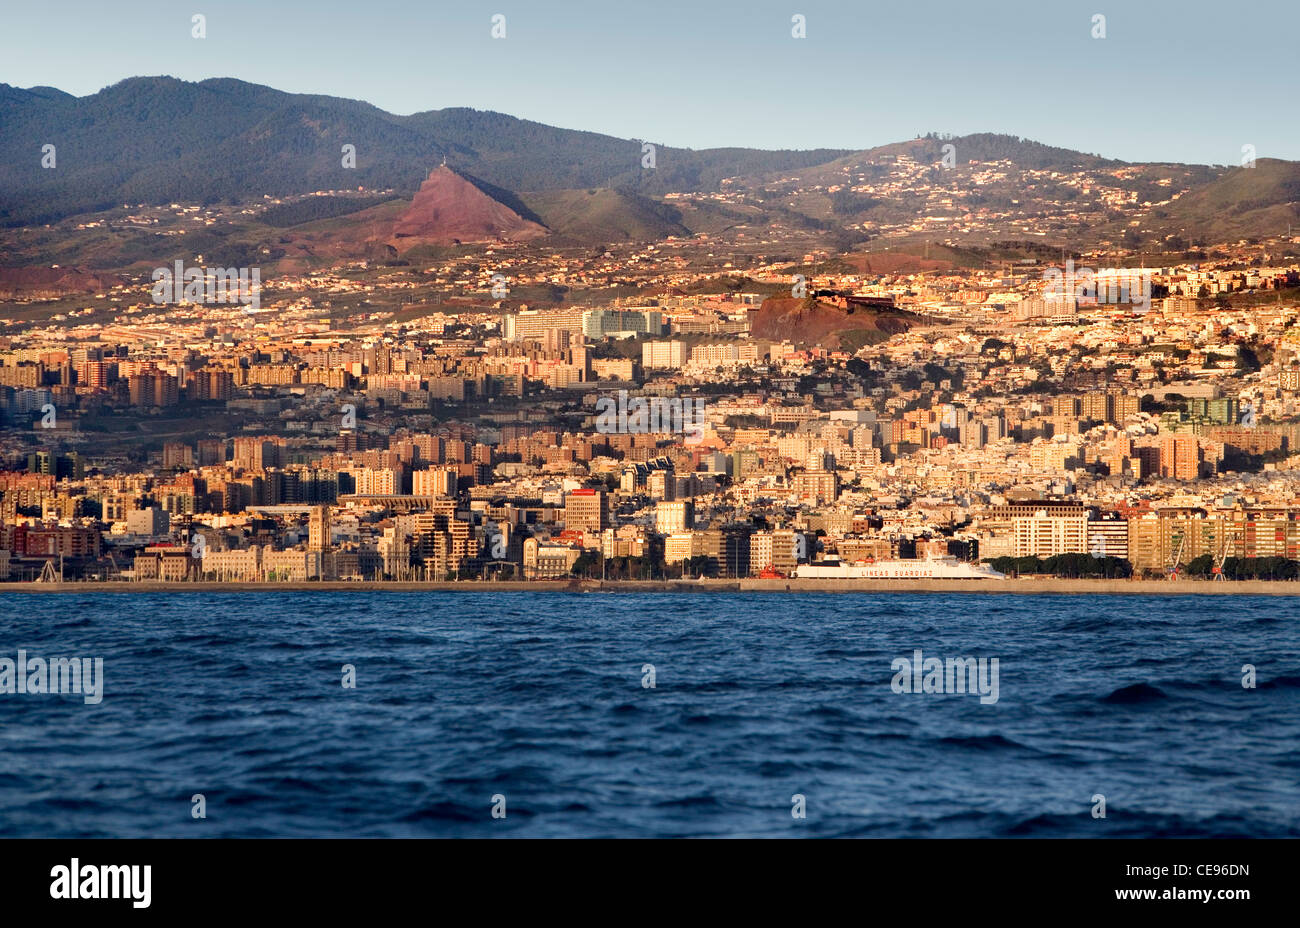 La città di Santa Cruz sull isola di Tenerife nelle Canarie come appare dall'acqua. Foto Stock